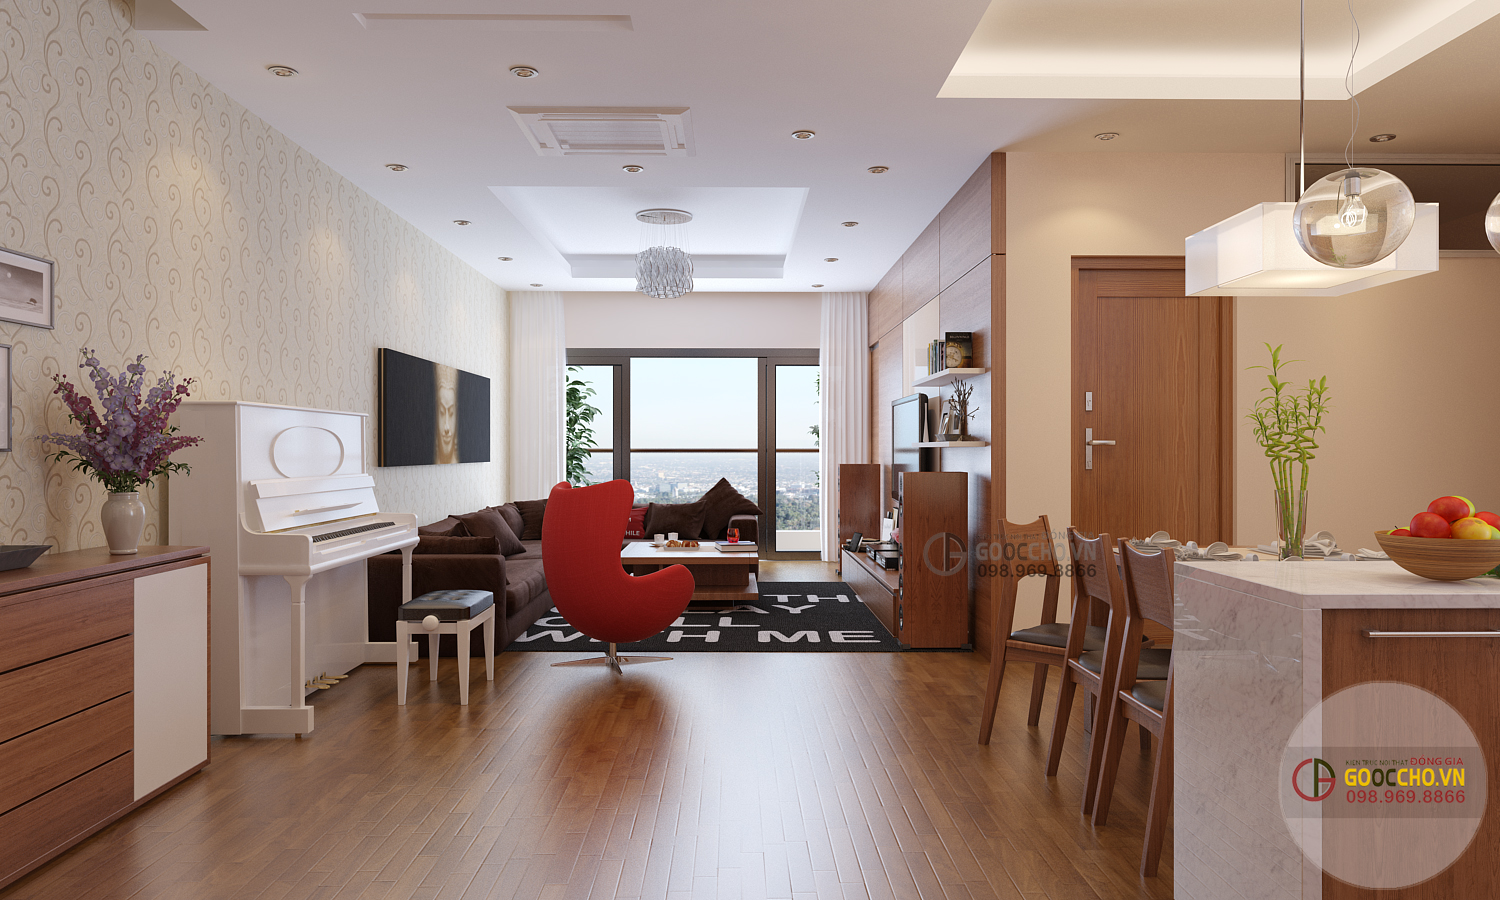 5 phong cách thiết kế căn hộ chung cư đẹp và thịnh hành nhất hiện nay -  Rever Blog